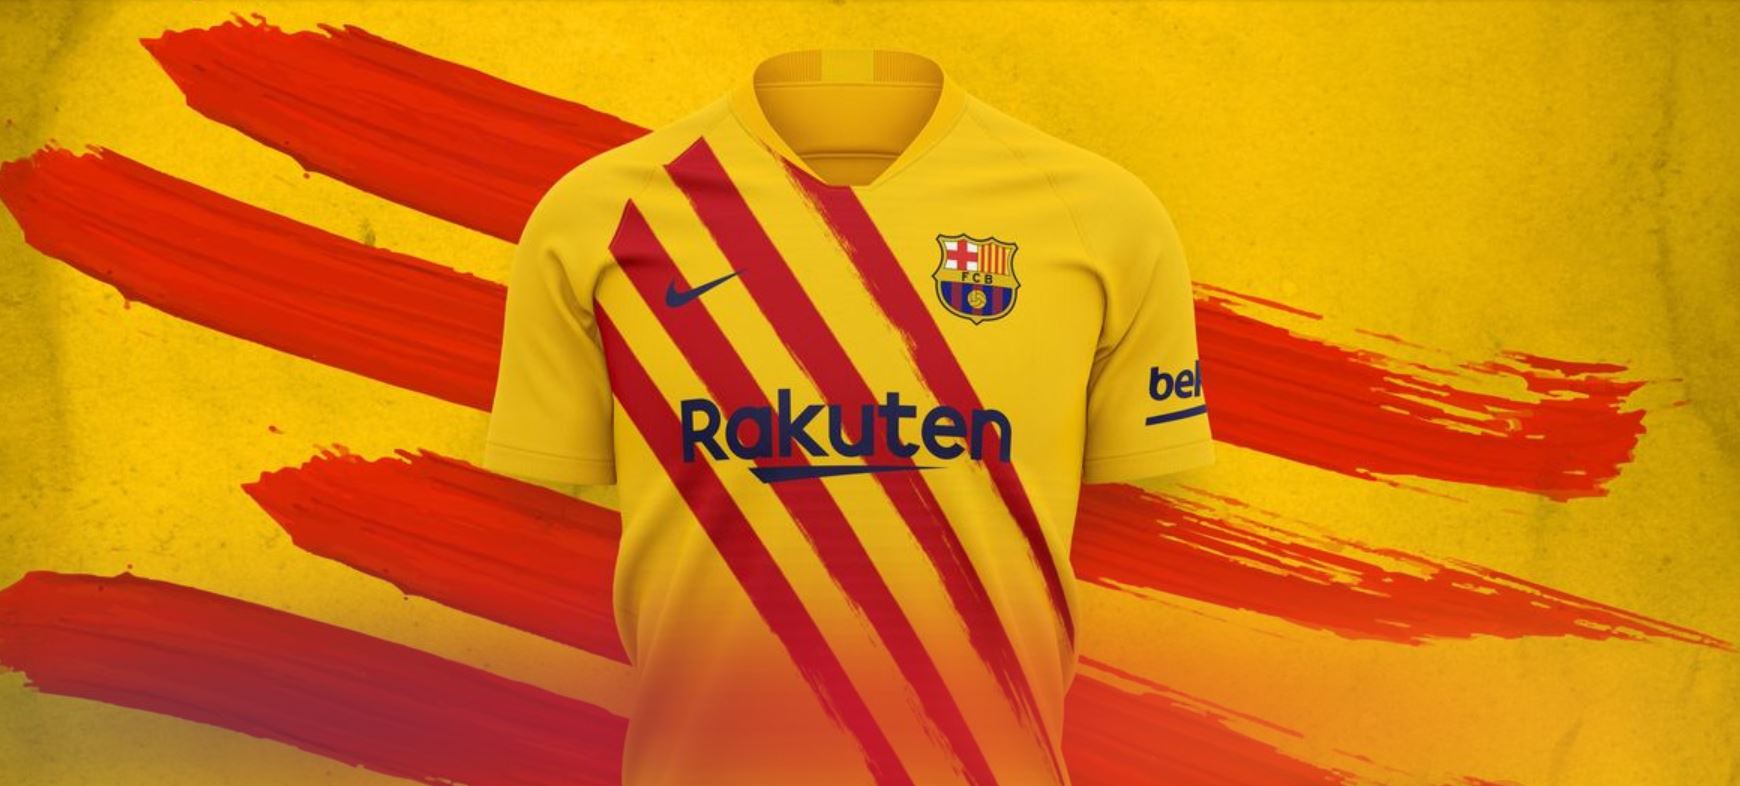 Le FC Barcelone présente son 4e maillot, une grosse surprise (photo)